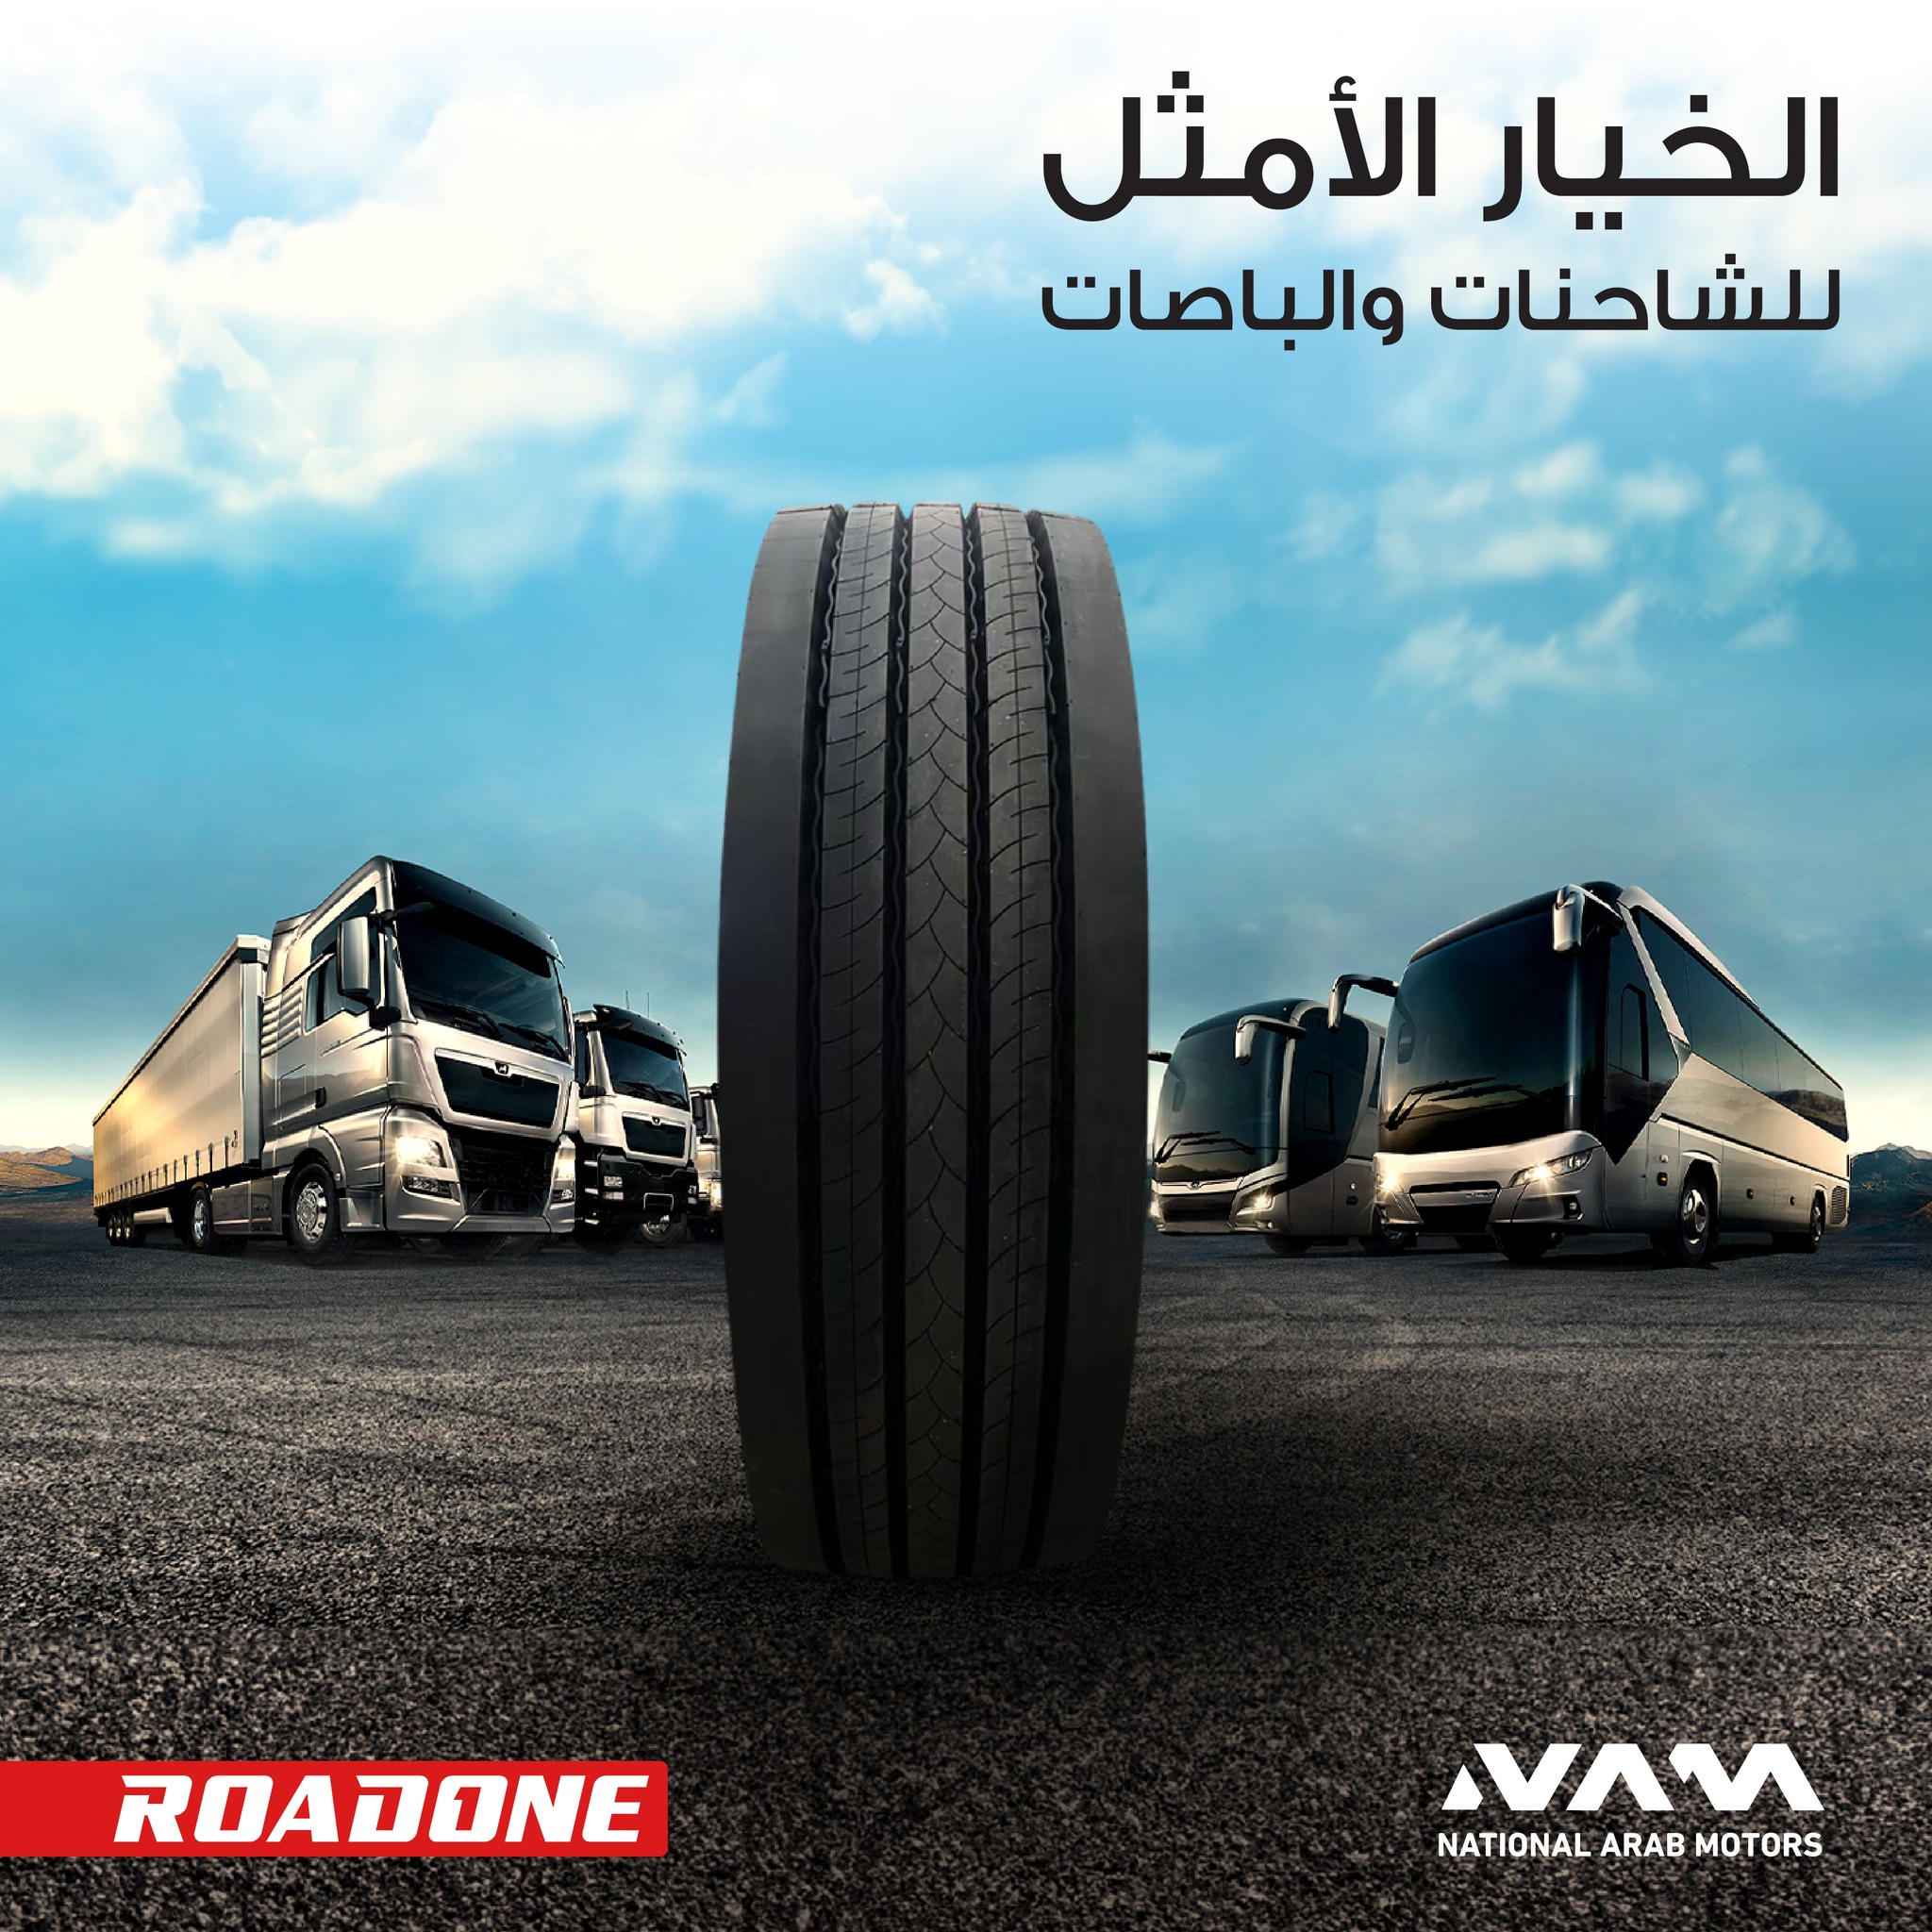 الشركة العربية الوطنية للسيارات وكيل اطارات رود وان للشاحنات